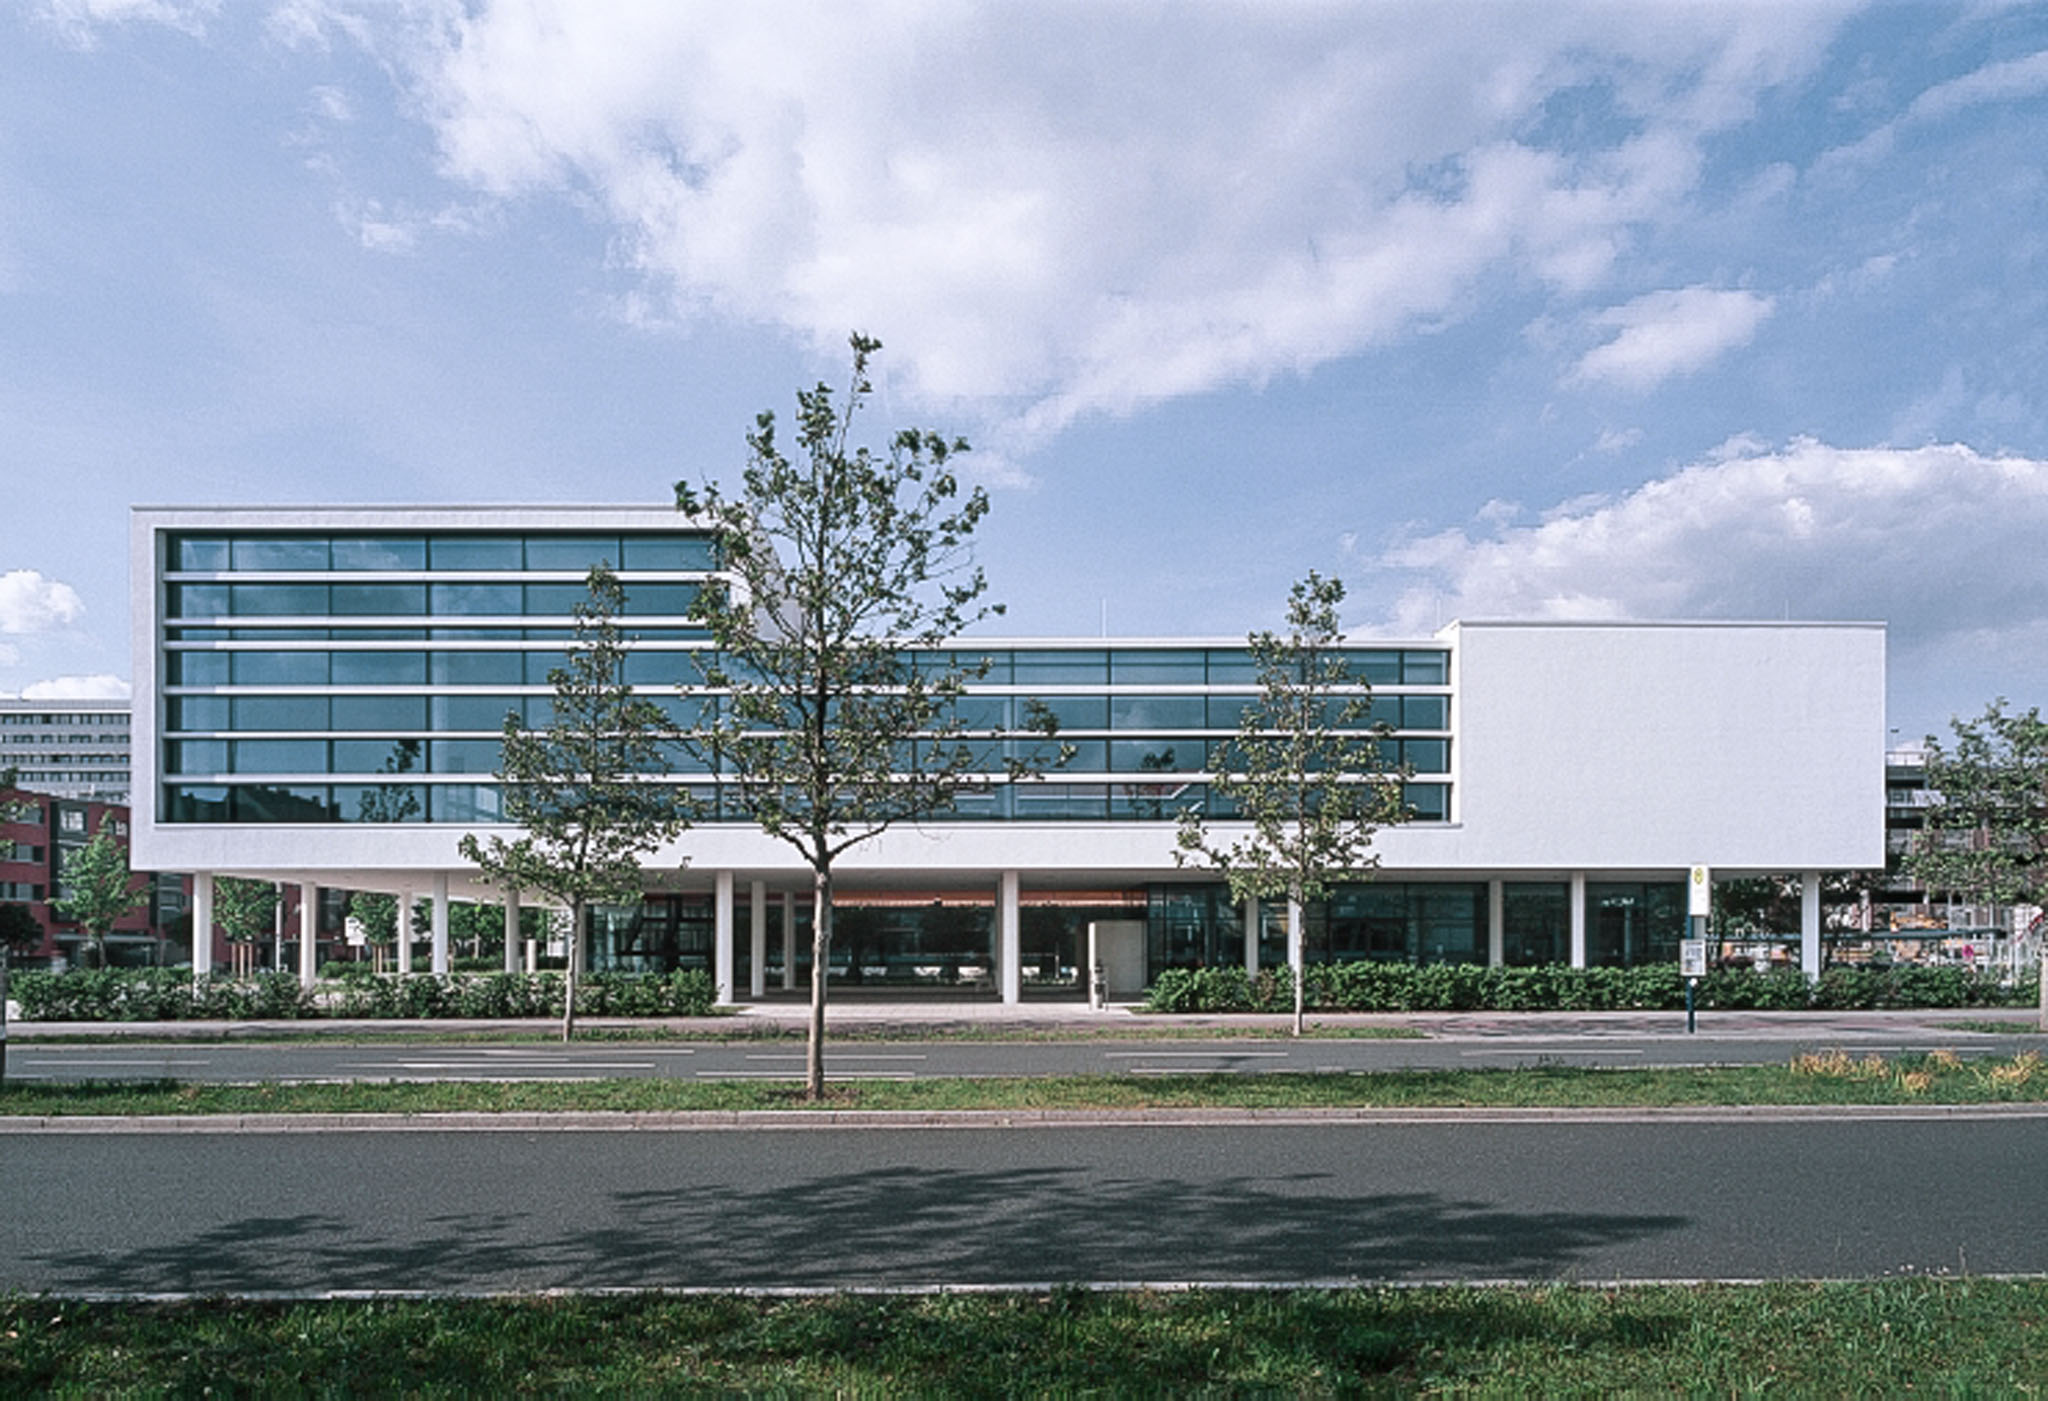 Siemens Betriebskantine, Erlangen